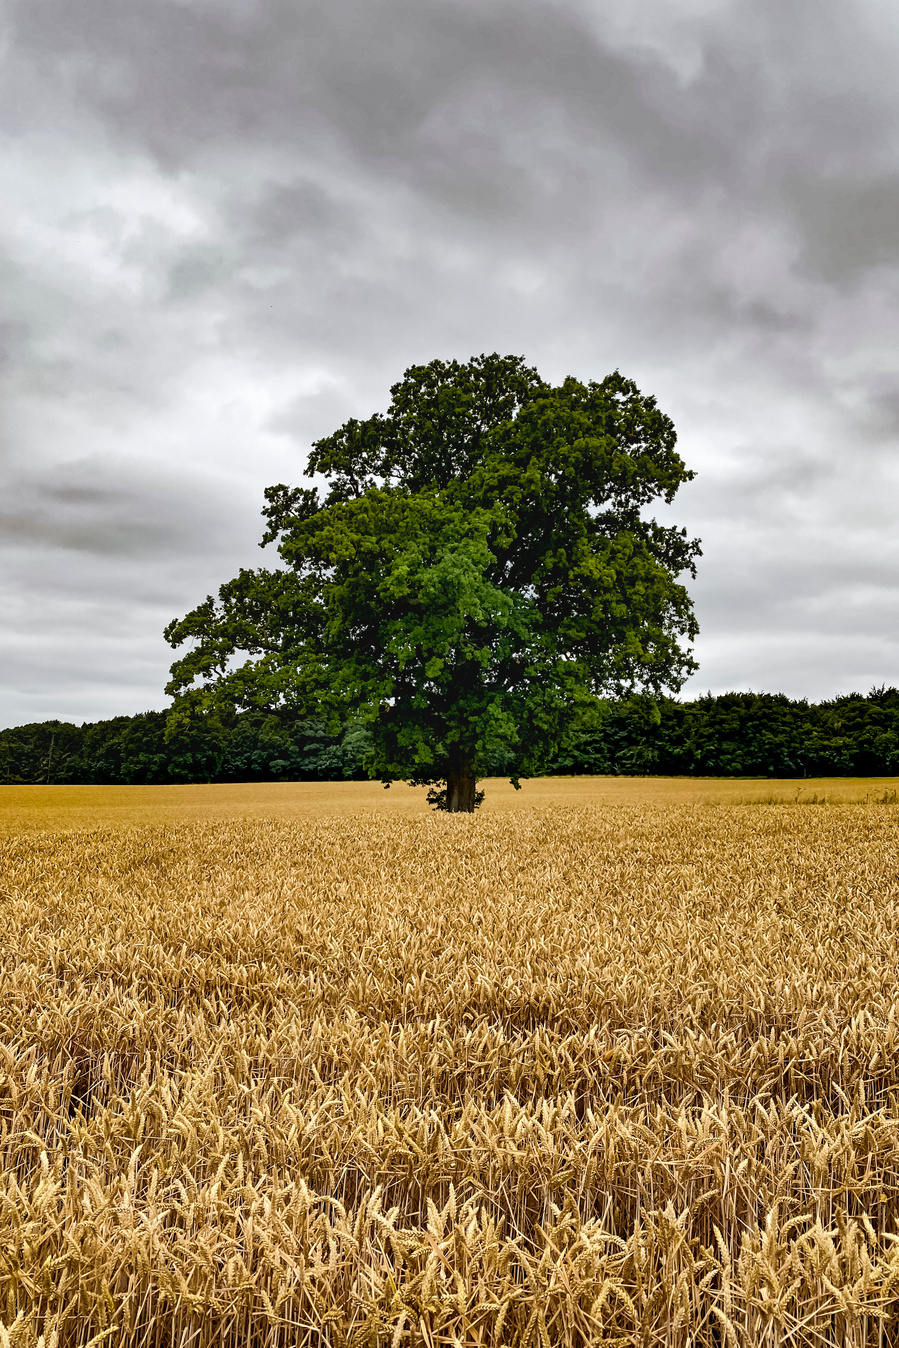 Oak tree in the fields of golden barley near Coleshill, Oxfordshire